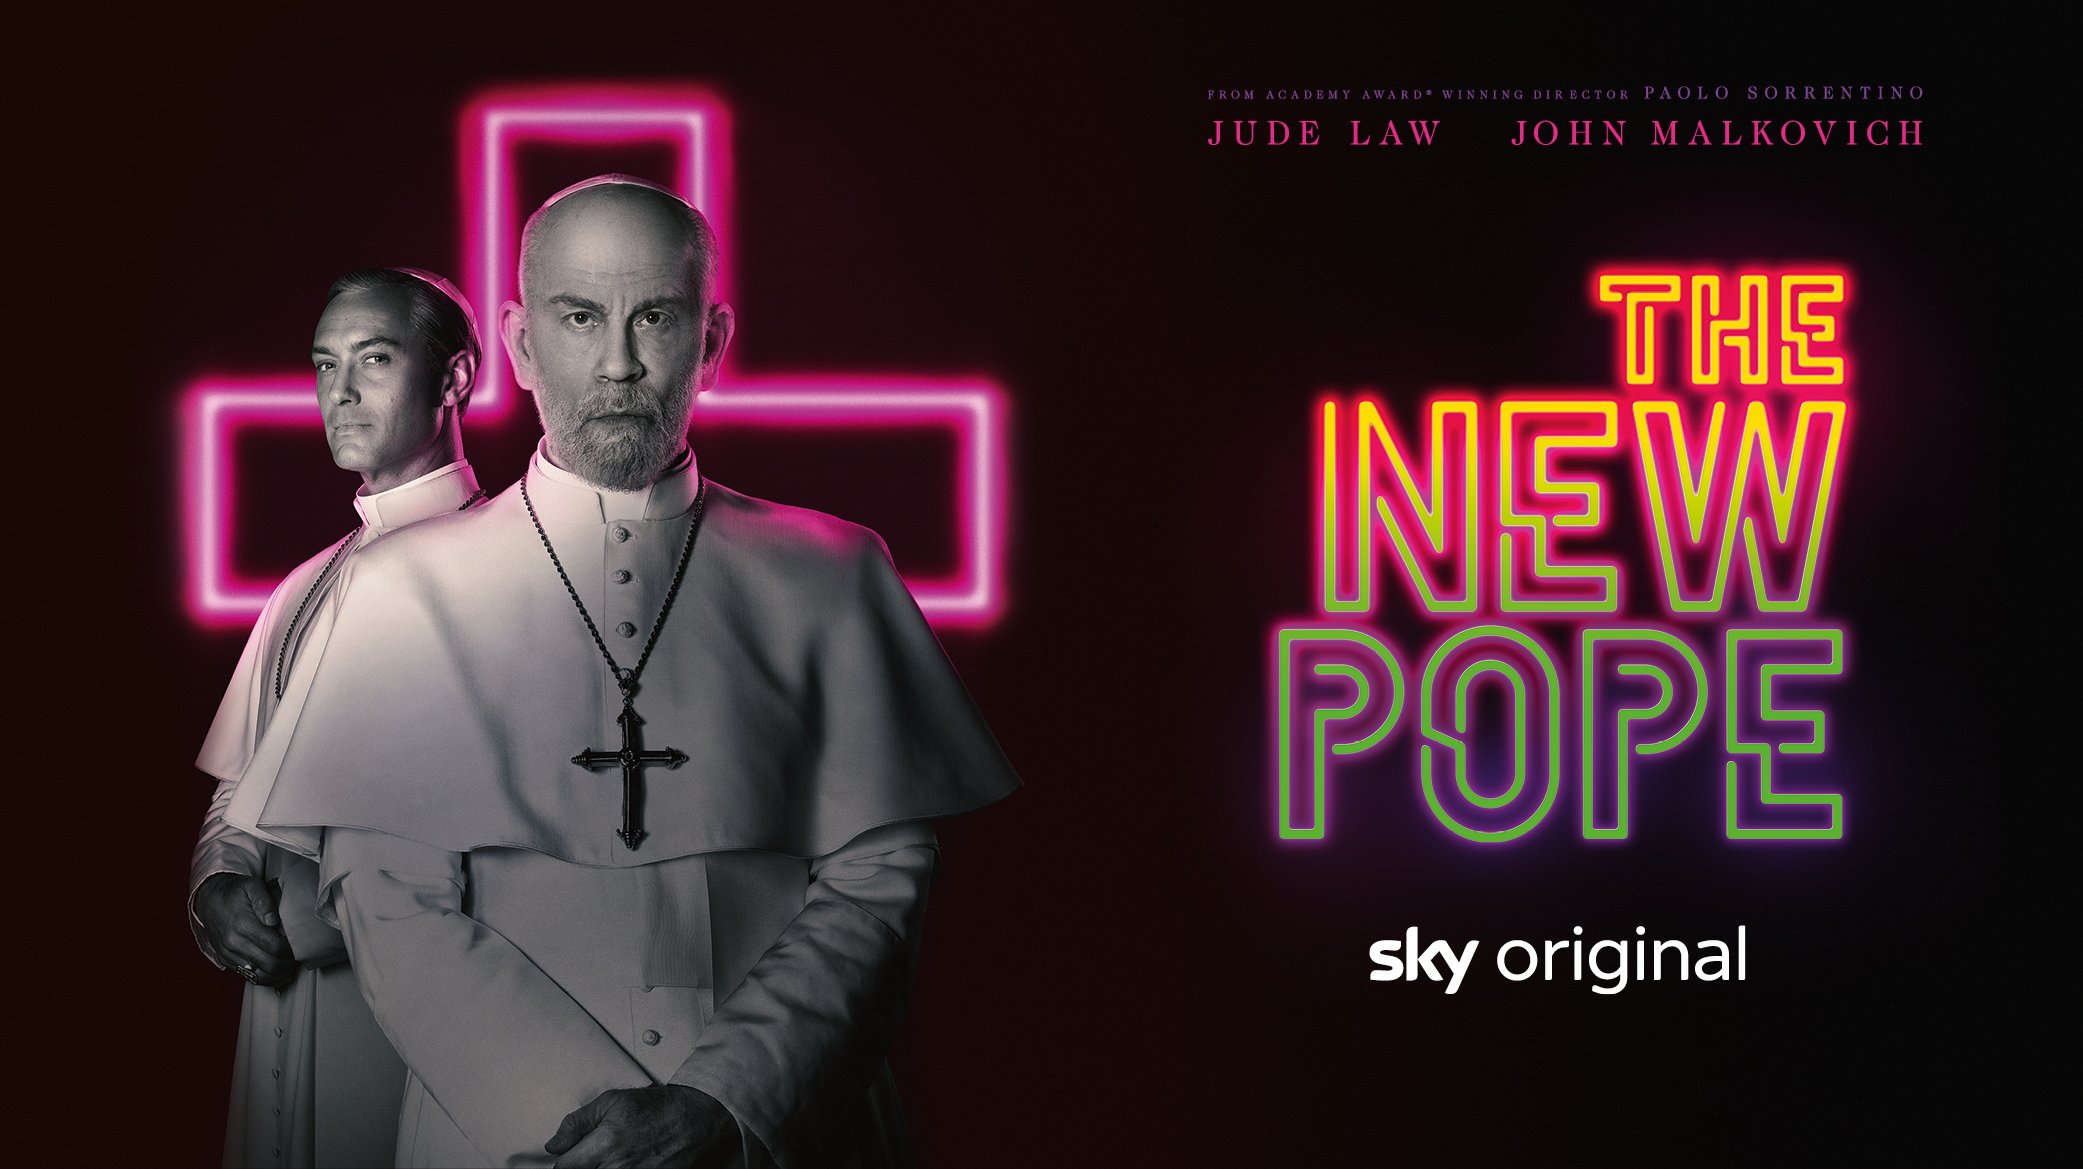 The New Pope mit Sky X streamen